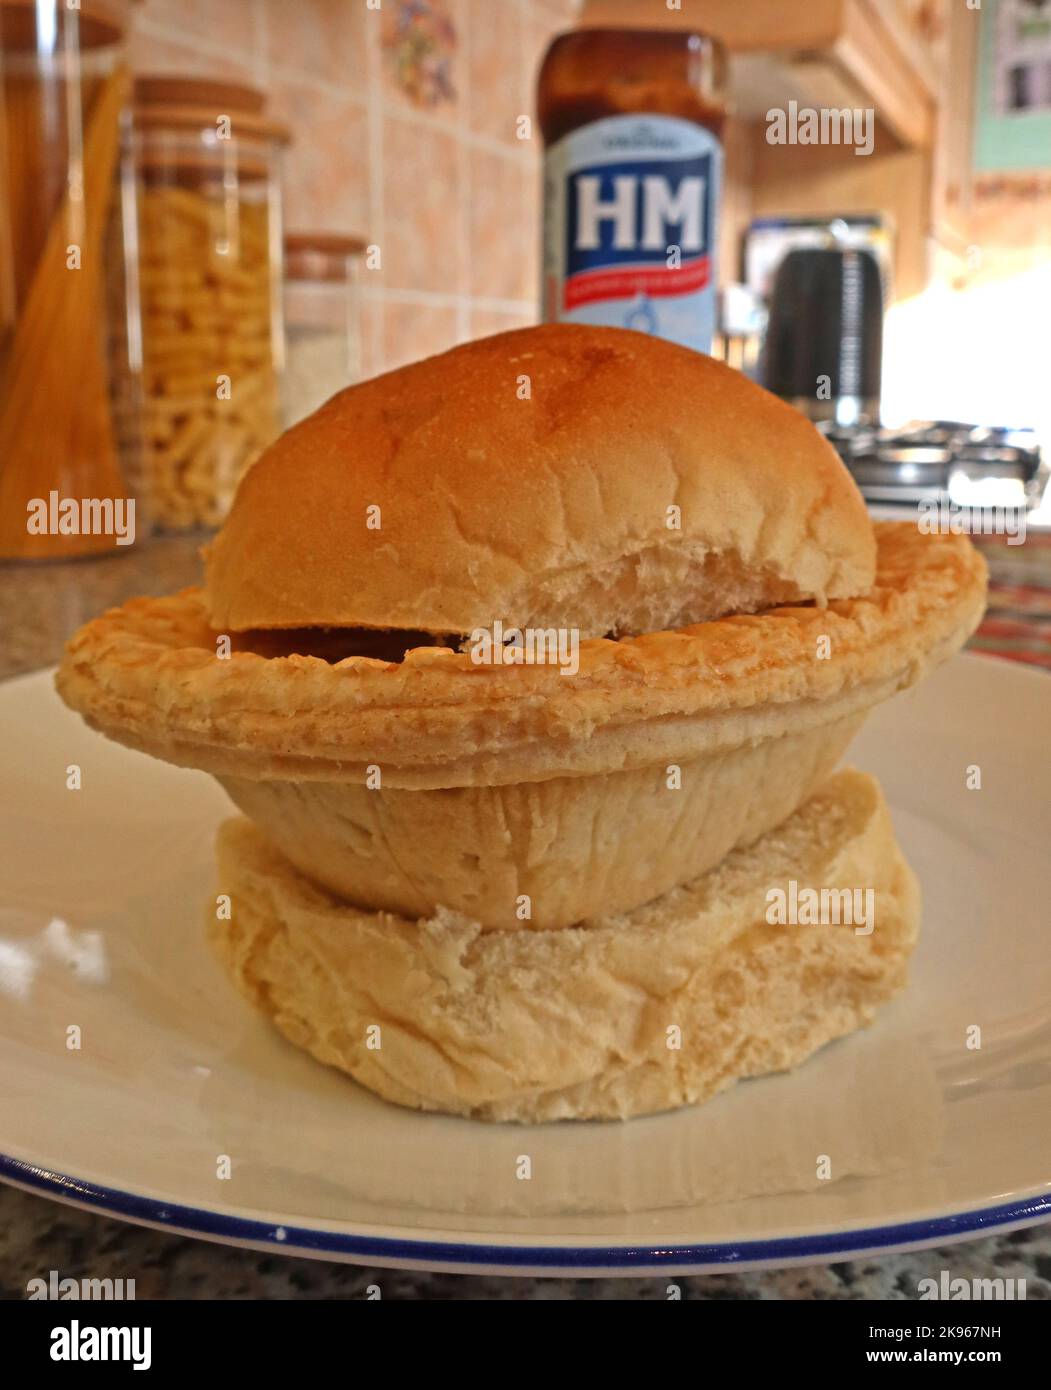 Wigan Lancashire Pie Burger, Steak- oder Fleischpastete auf einem Muffin mit Ofenboden, mit HP Sauce Bottle – nordwestlich des britischen Komfortgerichts, Großbritannien Stockfoto